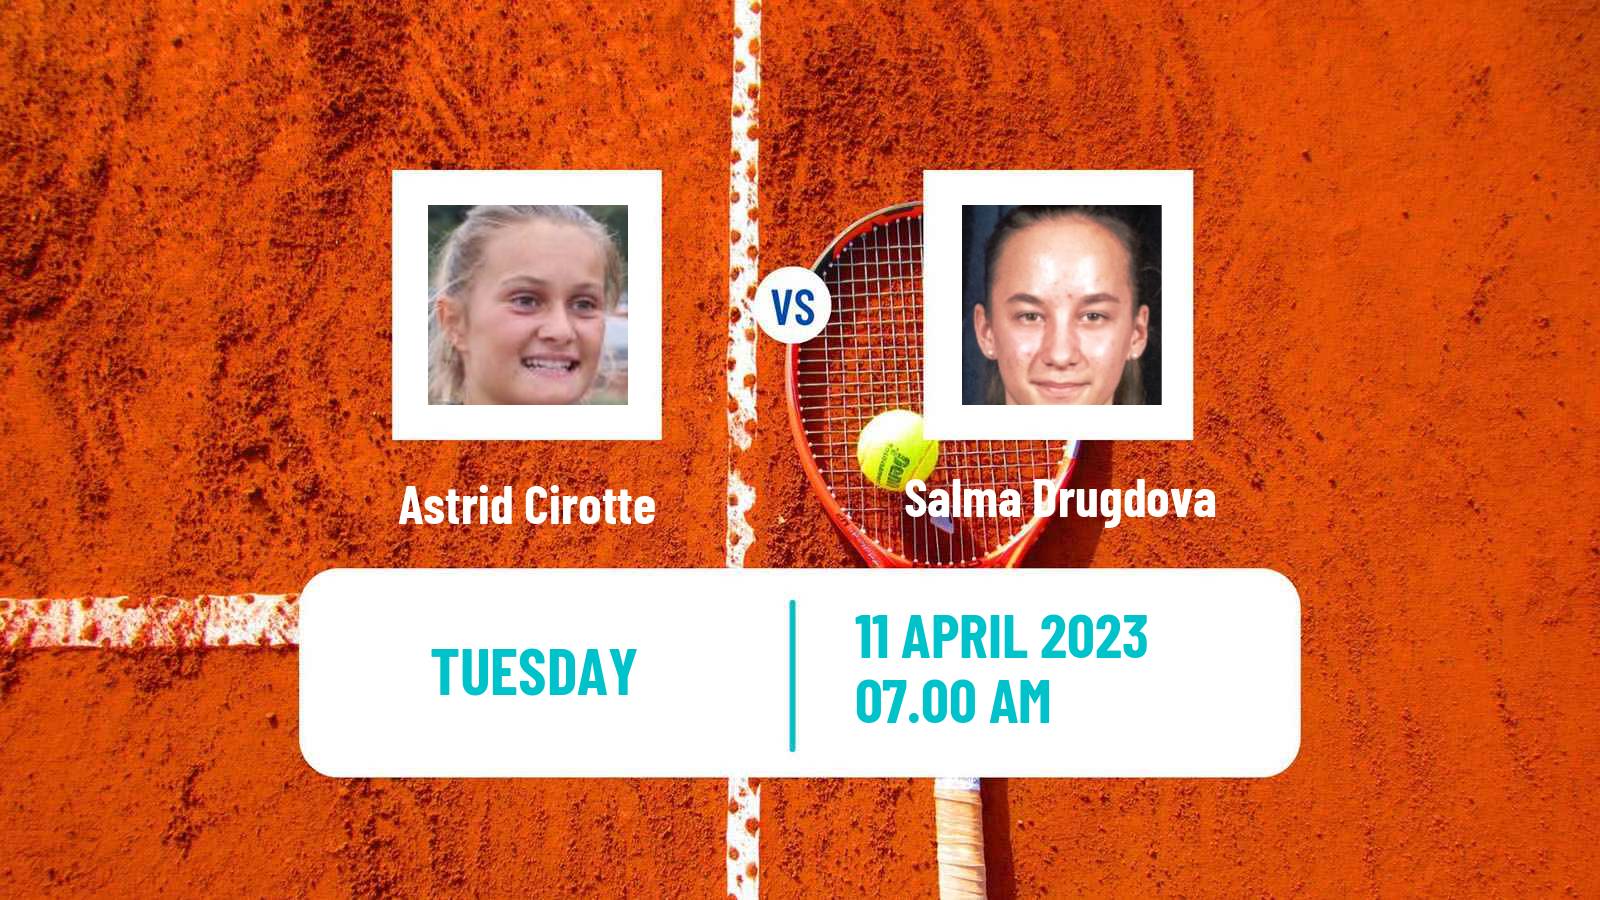 Tennis ITF Tournaments Astrid Cirotte - Salma Drugdova